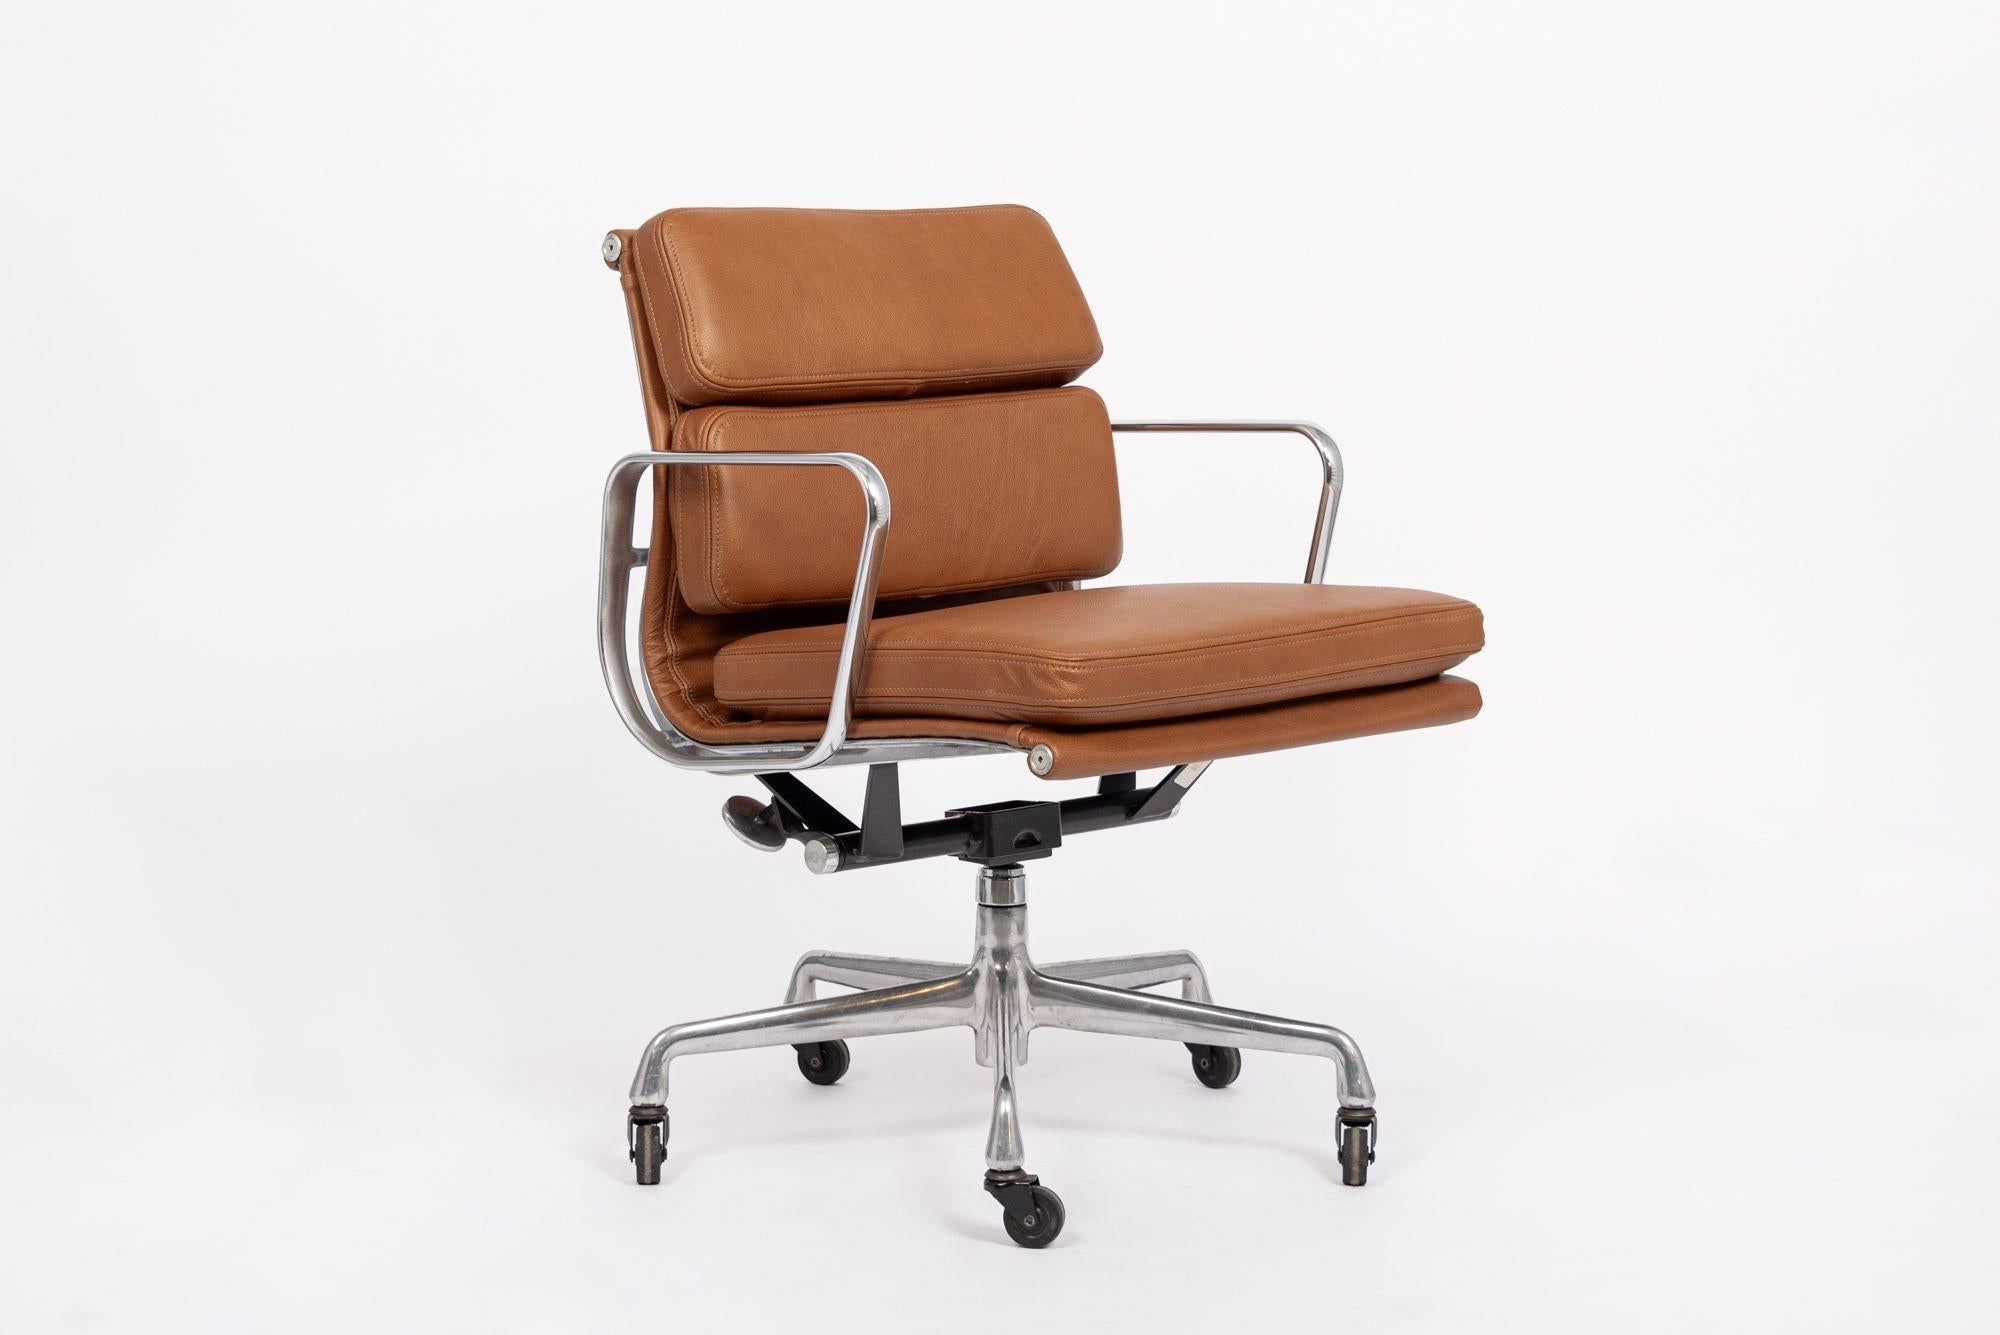 Dieser authentische Eames for Herman Miller Soft Pad Management Height Bürostuhl aus braunem Leder der Aluminum Group Collection wurde in den 2000er Jahren hergestellt. Dieser klassische, moderne Bürostuhl aus der Mitte des Jahrhunderts wurde 1969